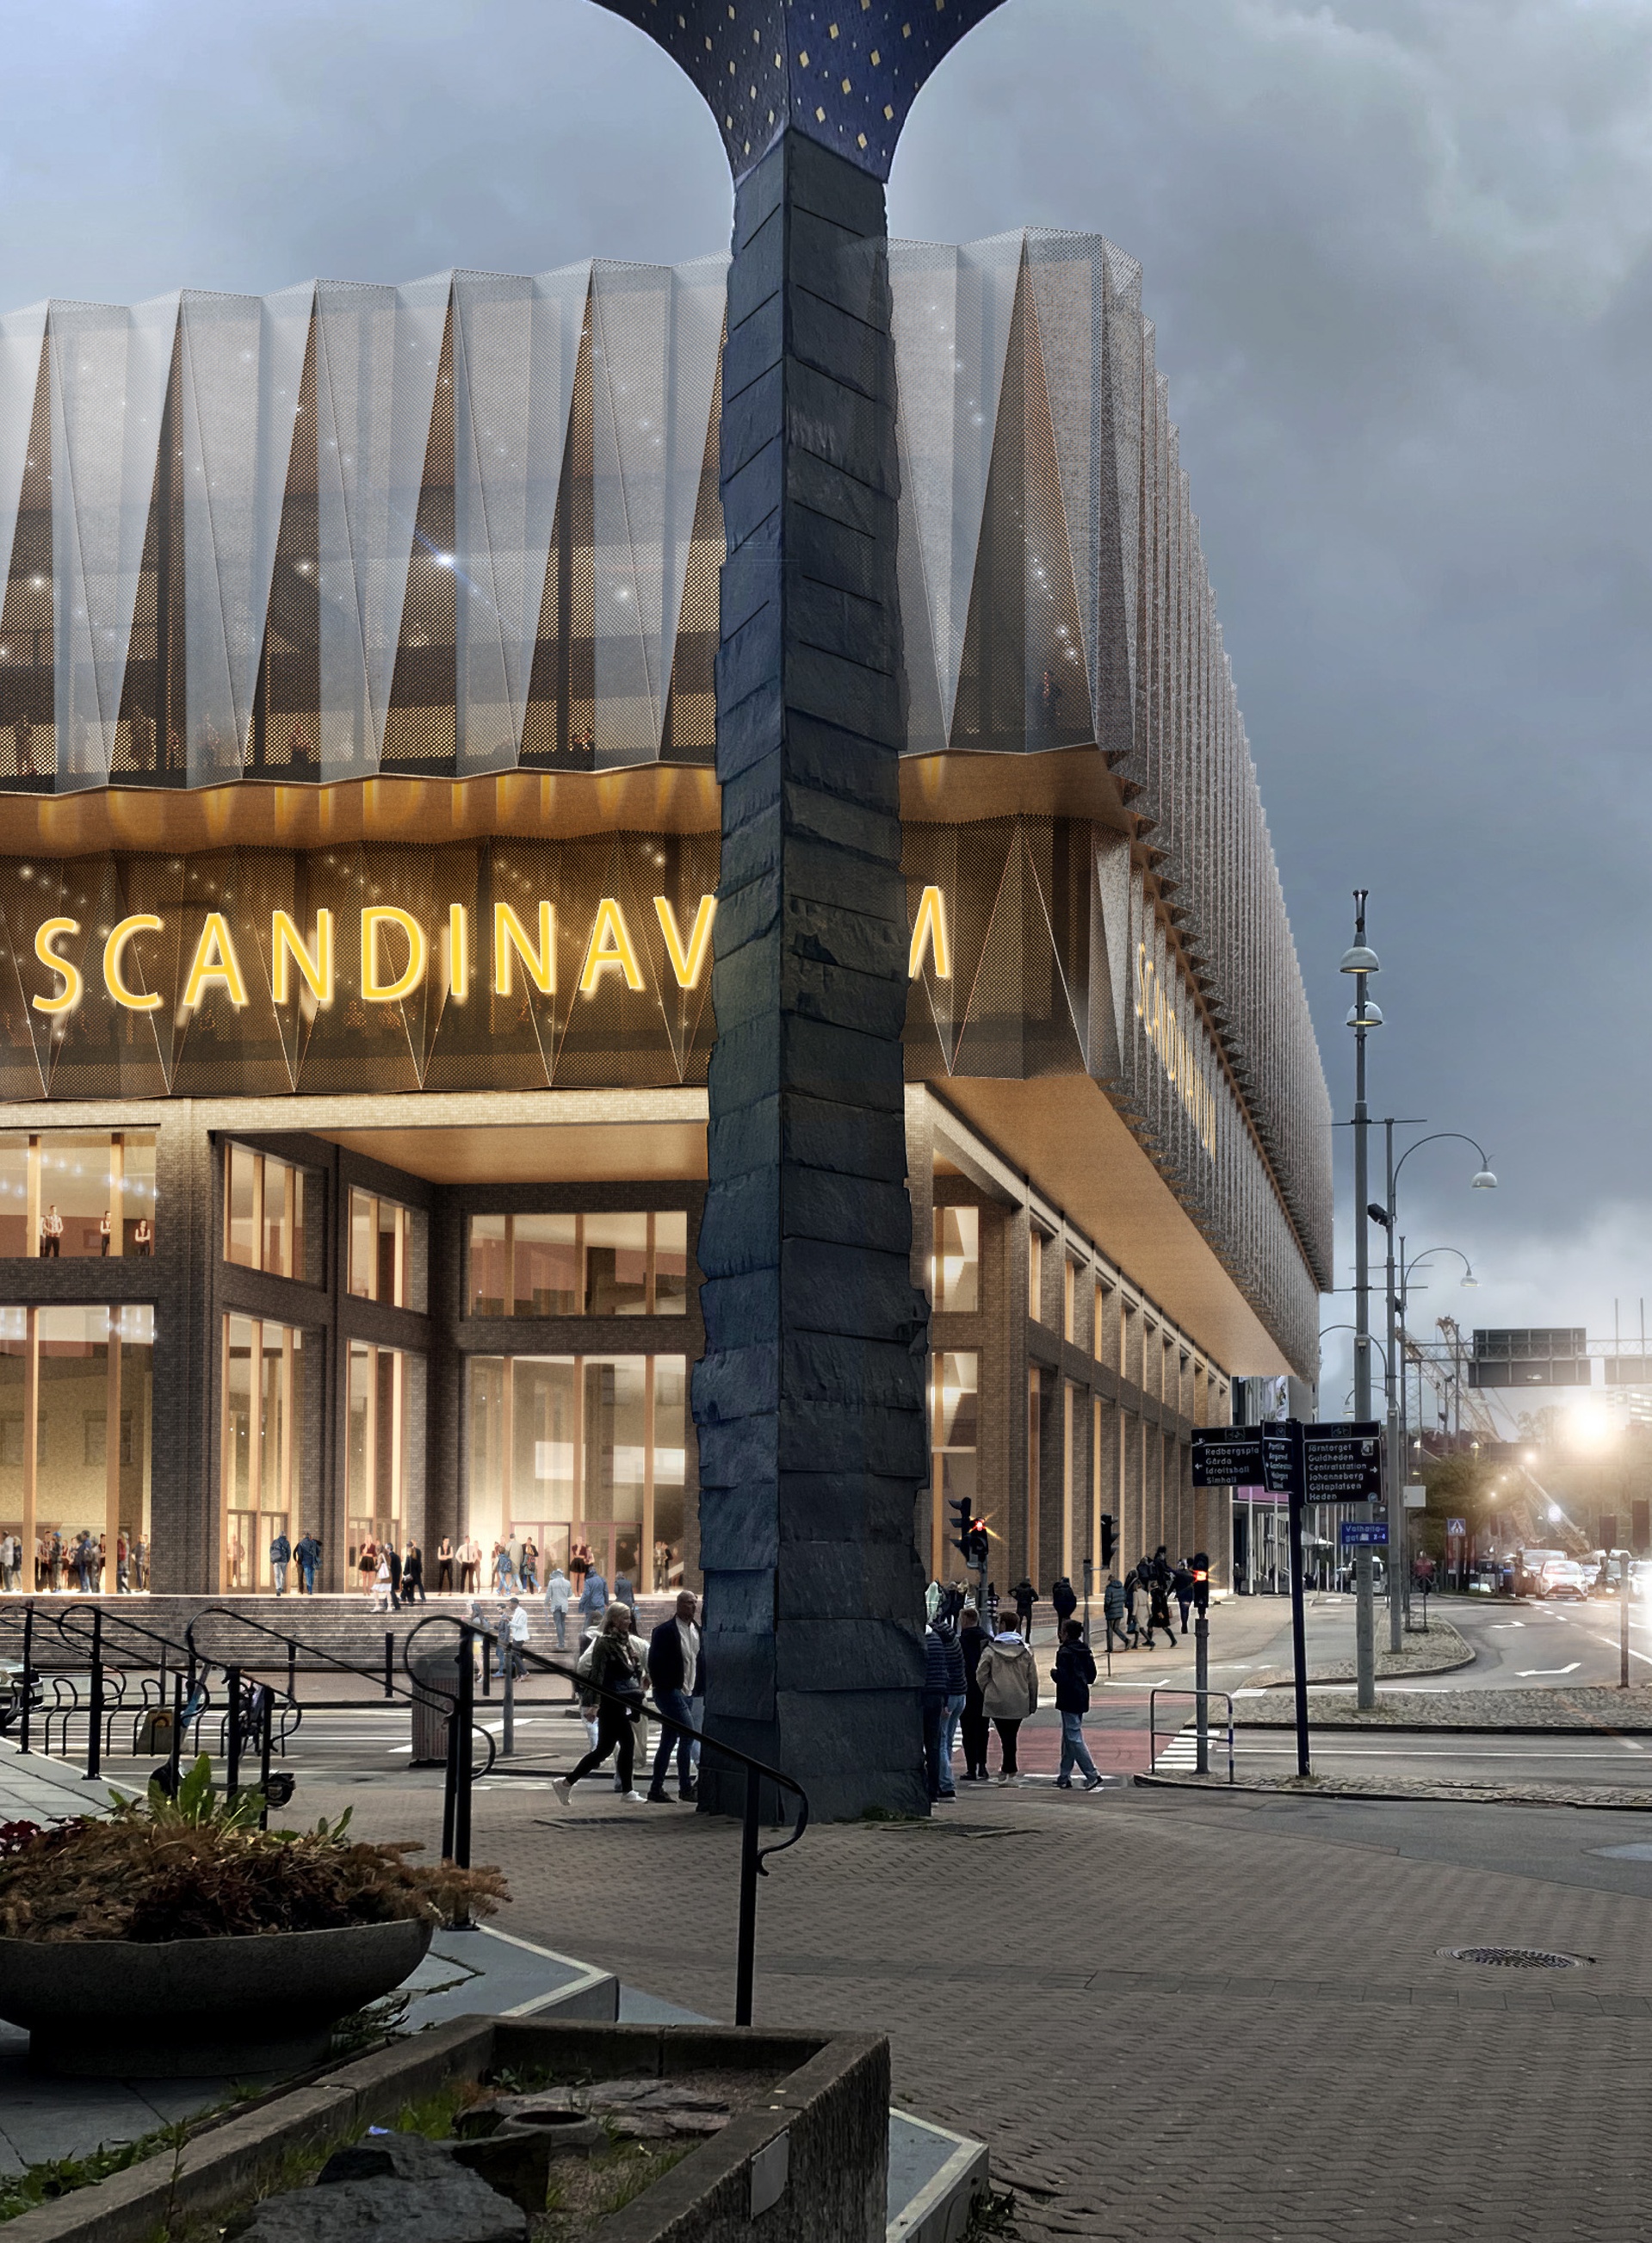 Visualisering förslag för Arenakvarteret 2030 av Krook & Tjäder